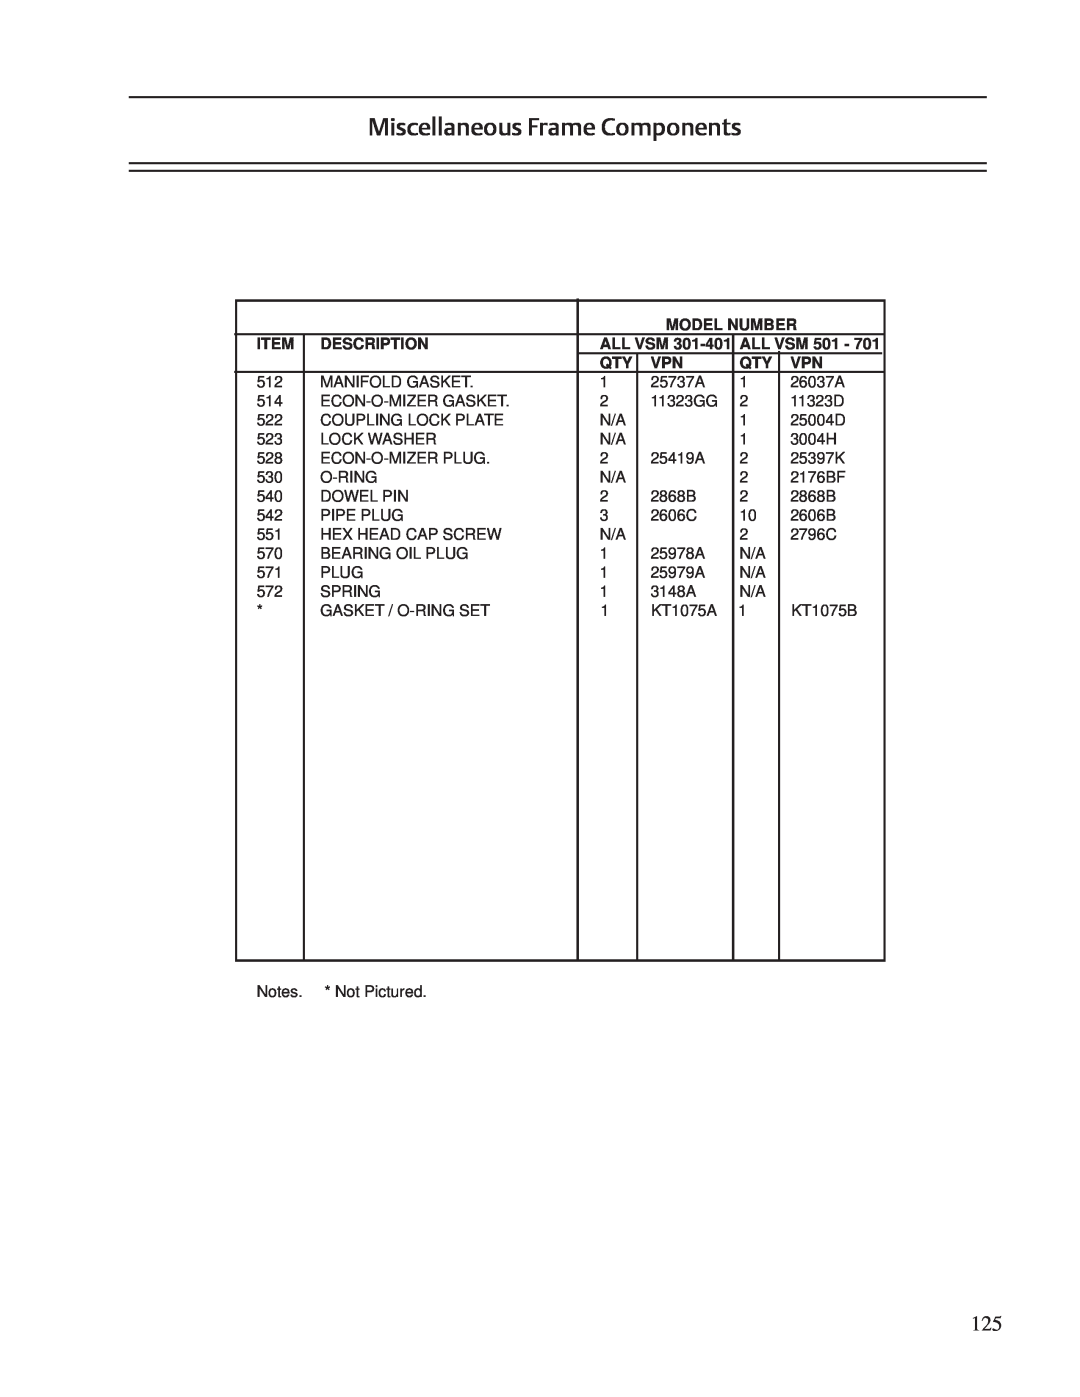 Emerson VSS, VSR, VSM service manual Miscellaneous Frame Components, Model Number, Description, All Vsm 